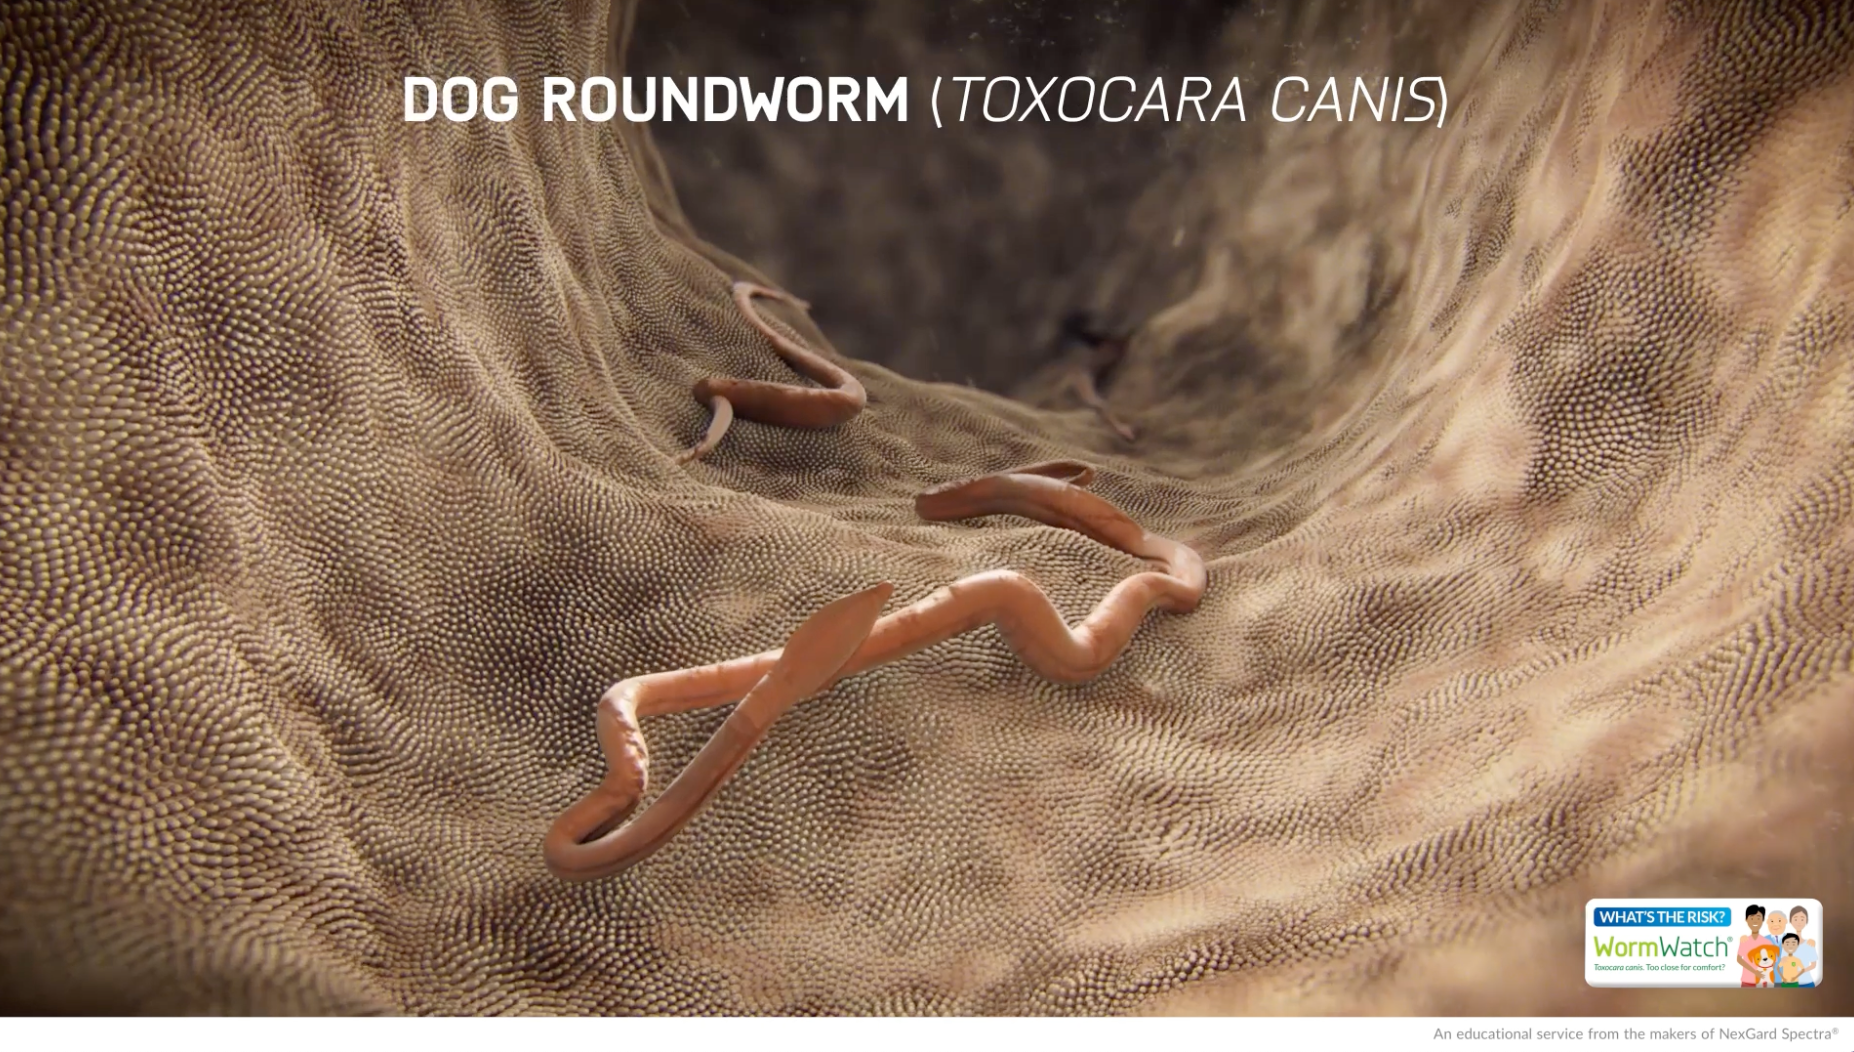 Roundworm lifecycle